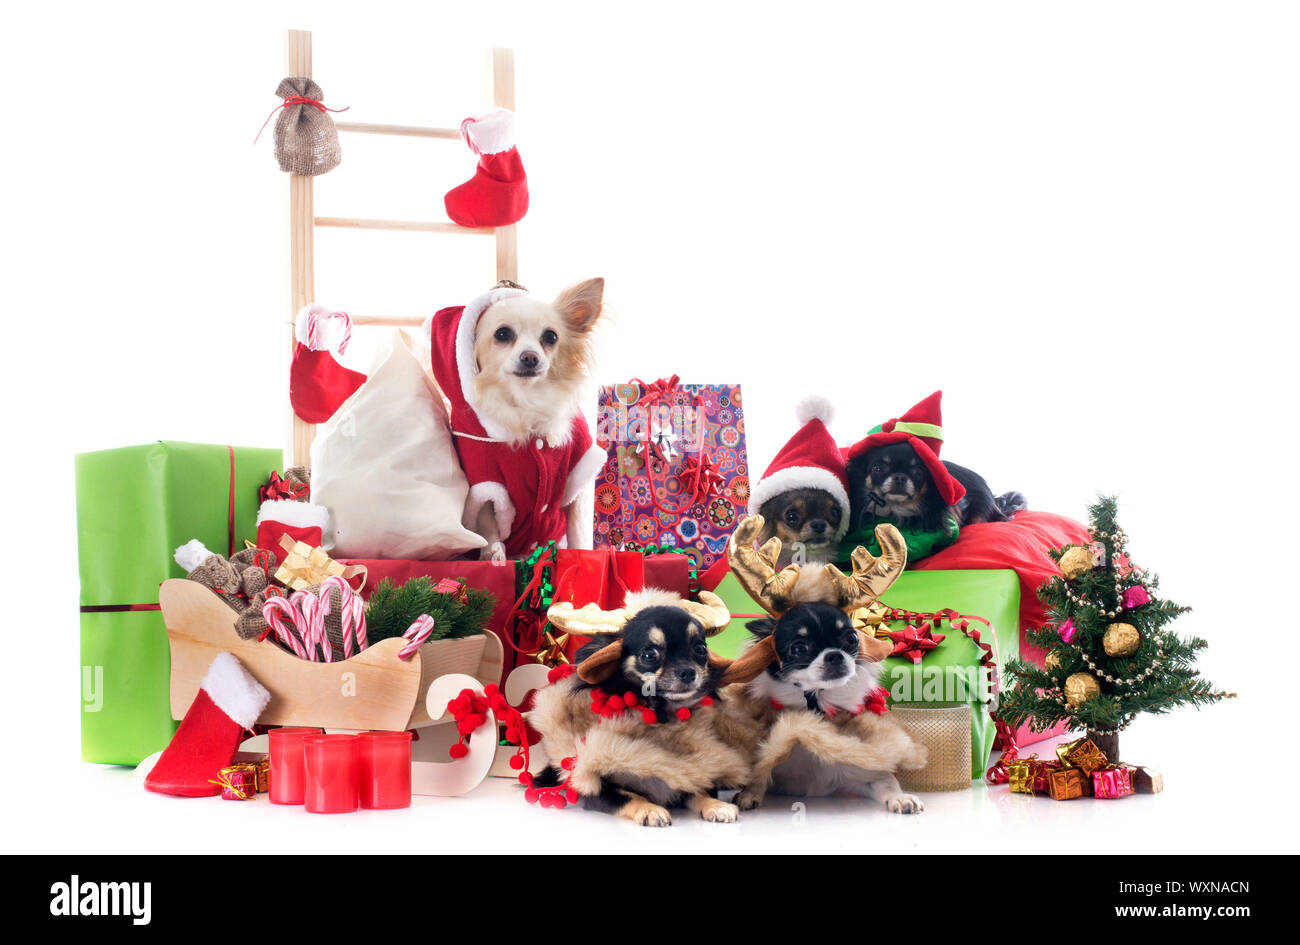 Natale chihuahuas davanti a uno sfondo bianco Foto Stock